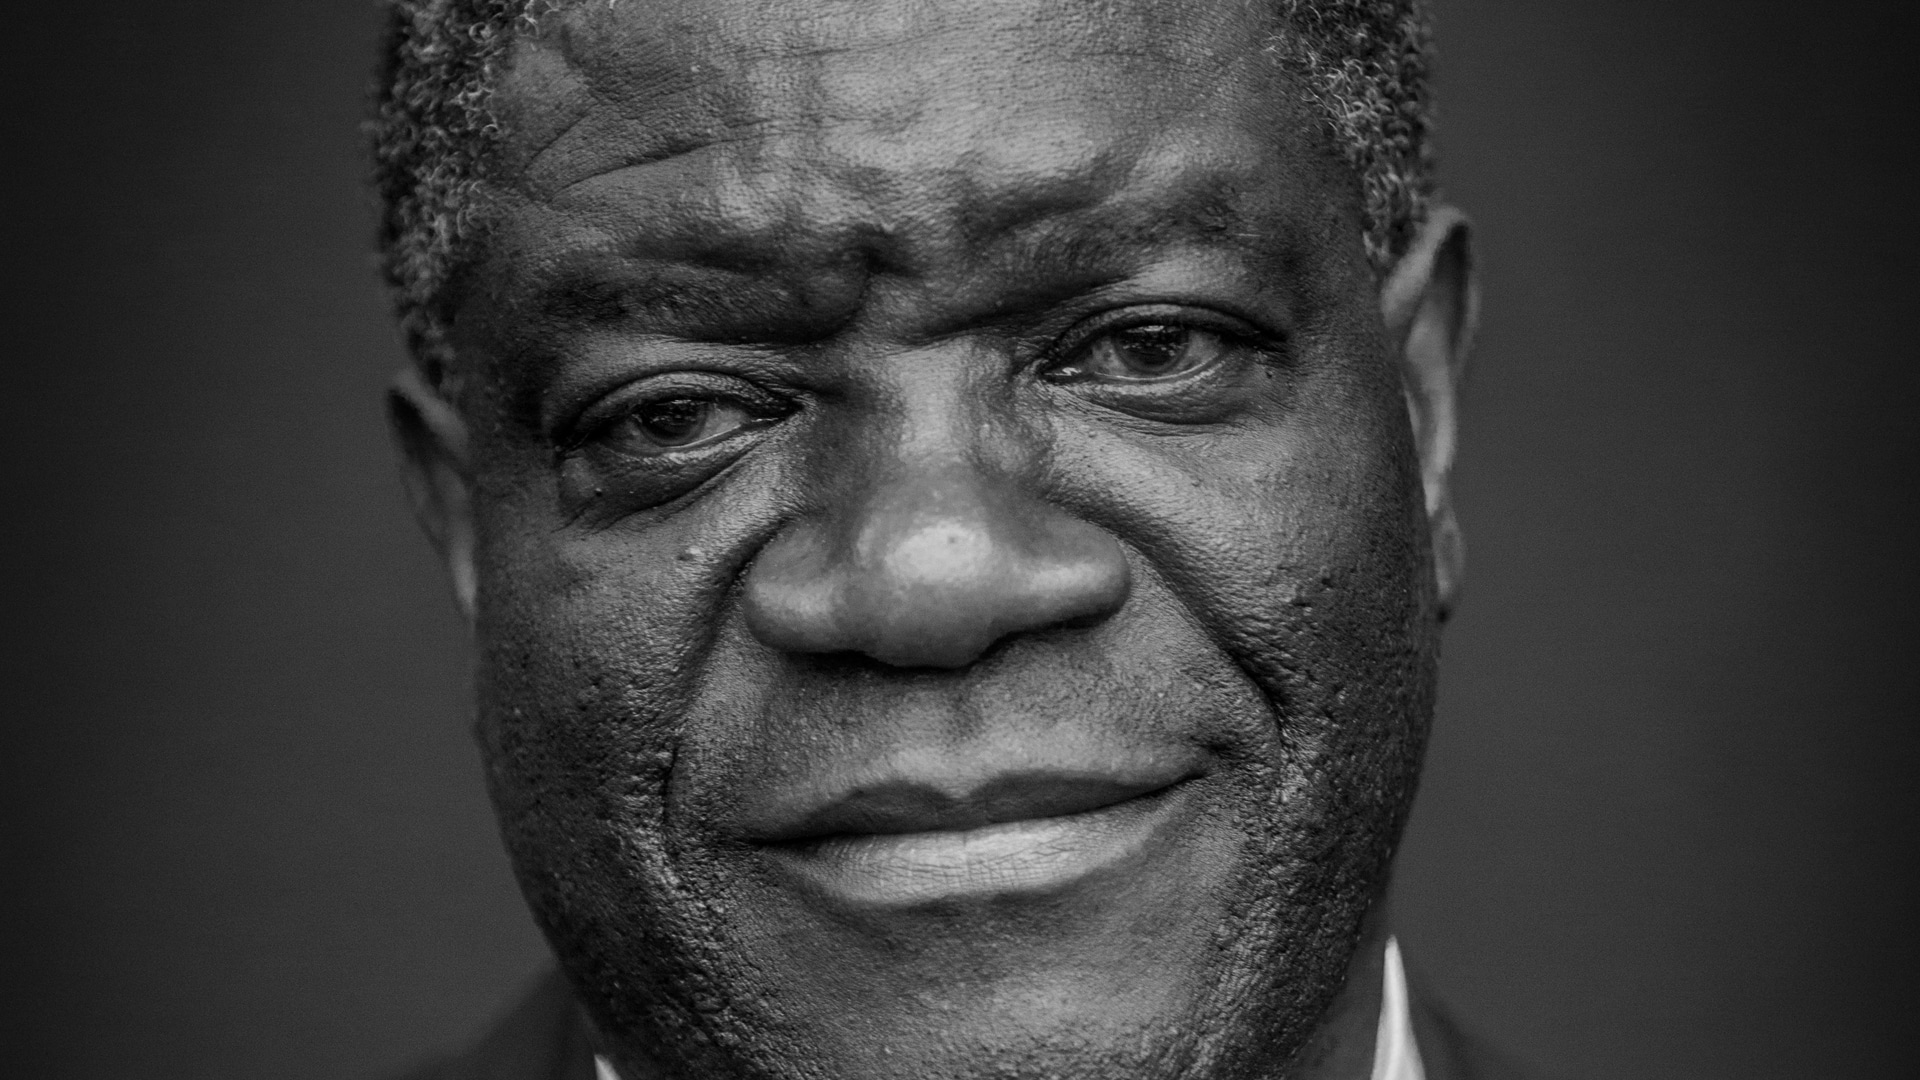 Der Christ und Friedensnobelpreisträger Denis Mukwege muss um sein Leben fürchten, weil er die Zustände in seinem Land anprangert